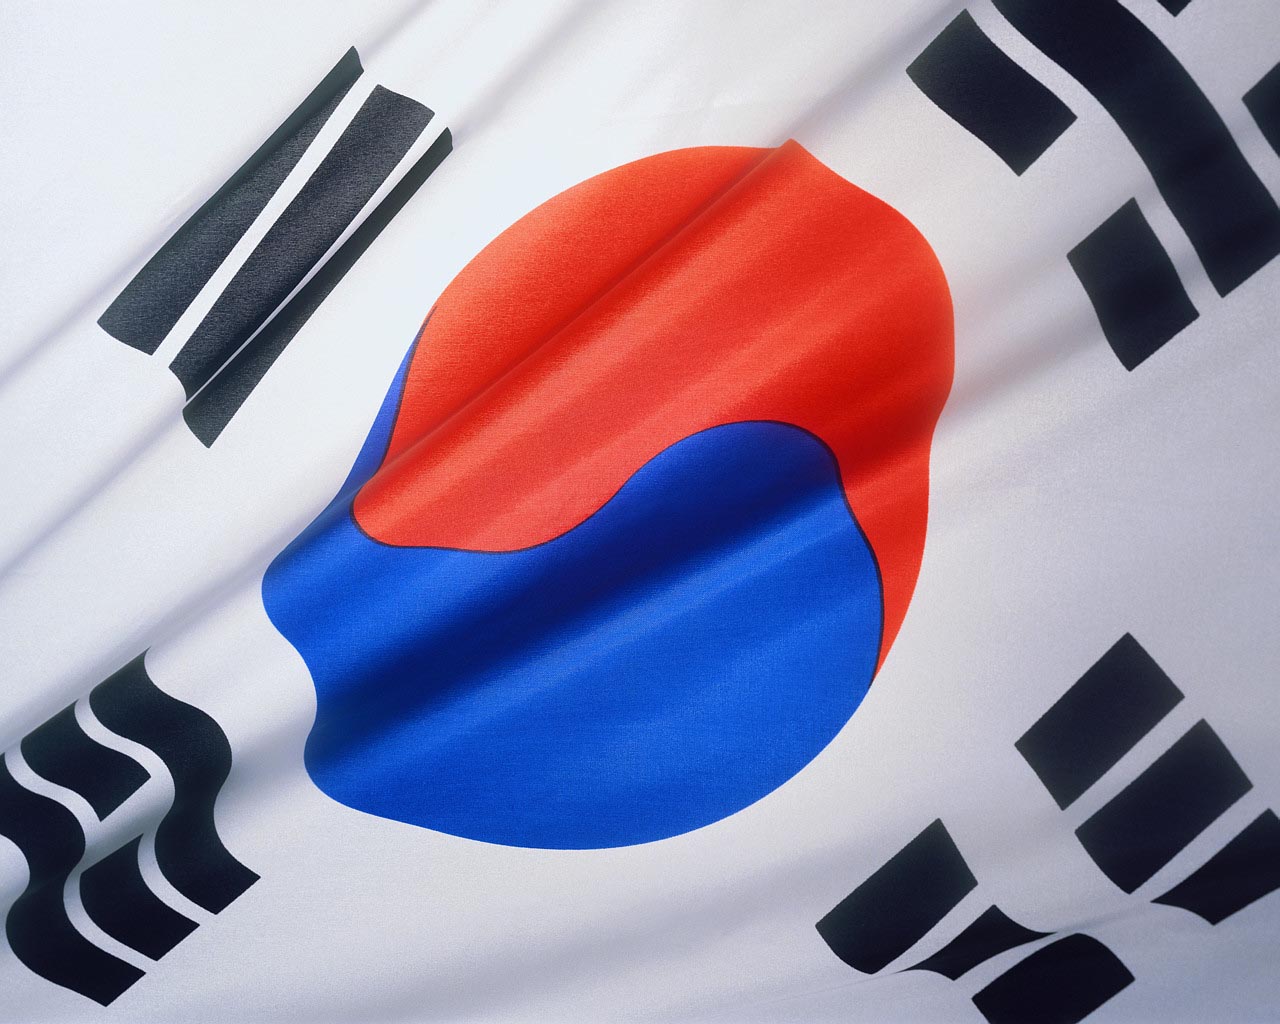 korean flag